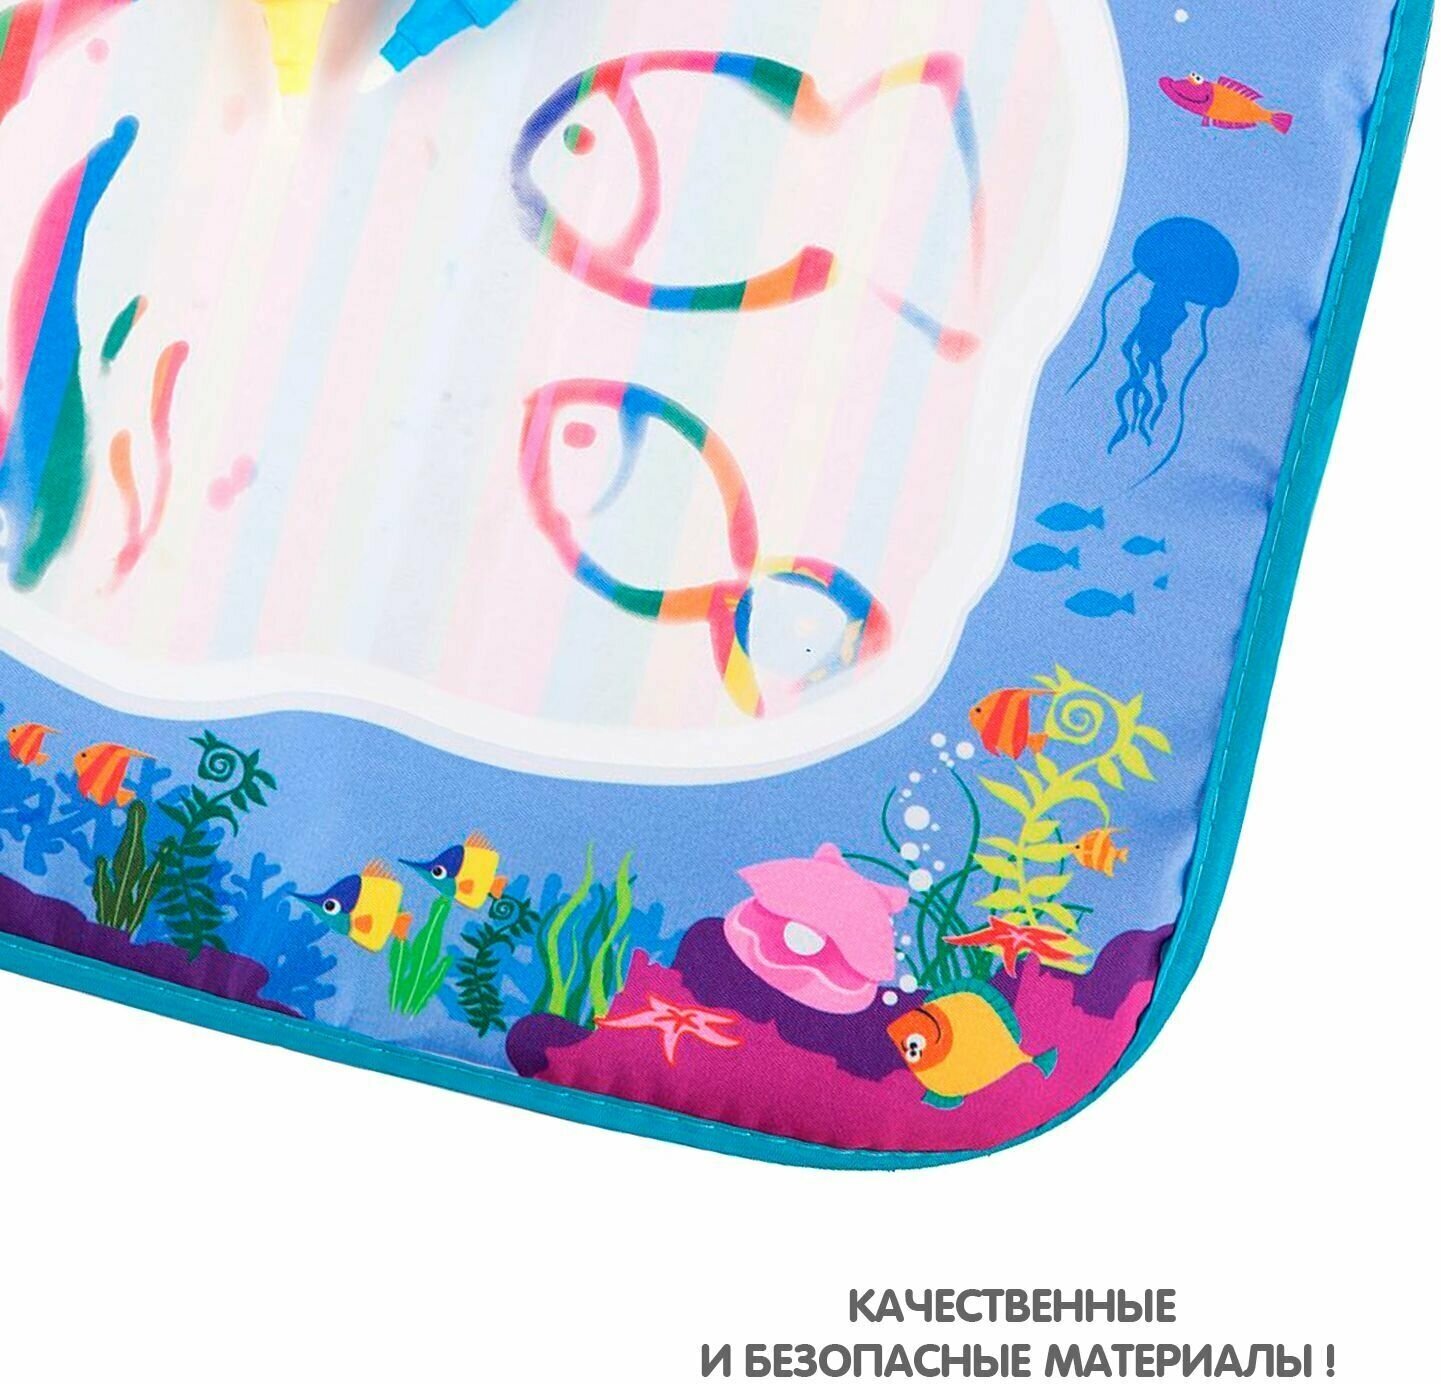 Водная раскраска-коврик для малышей "Море" Bondibon, 2 ручки, многоразовая, 39х29 см ВВ3096